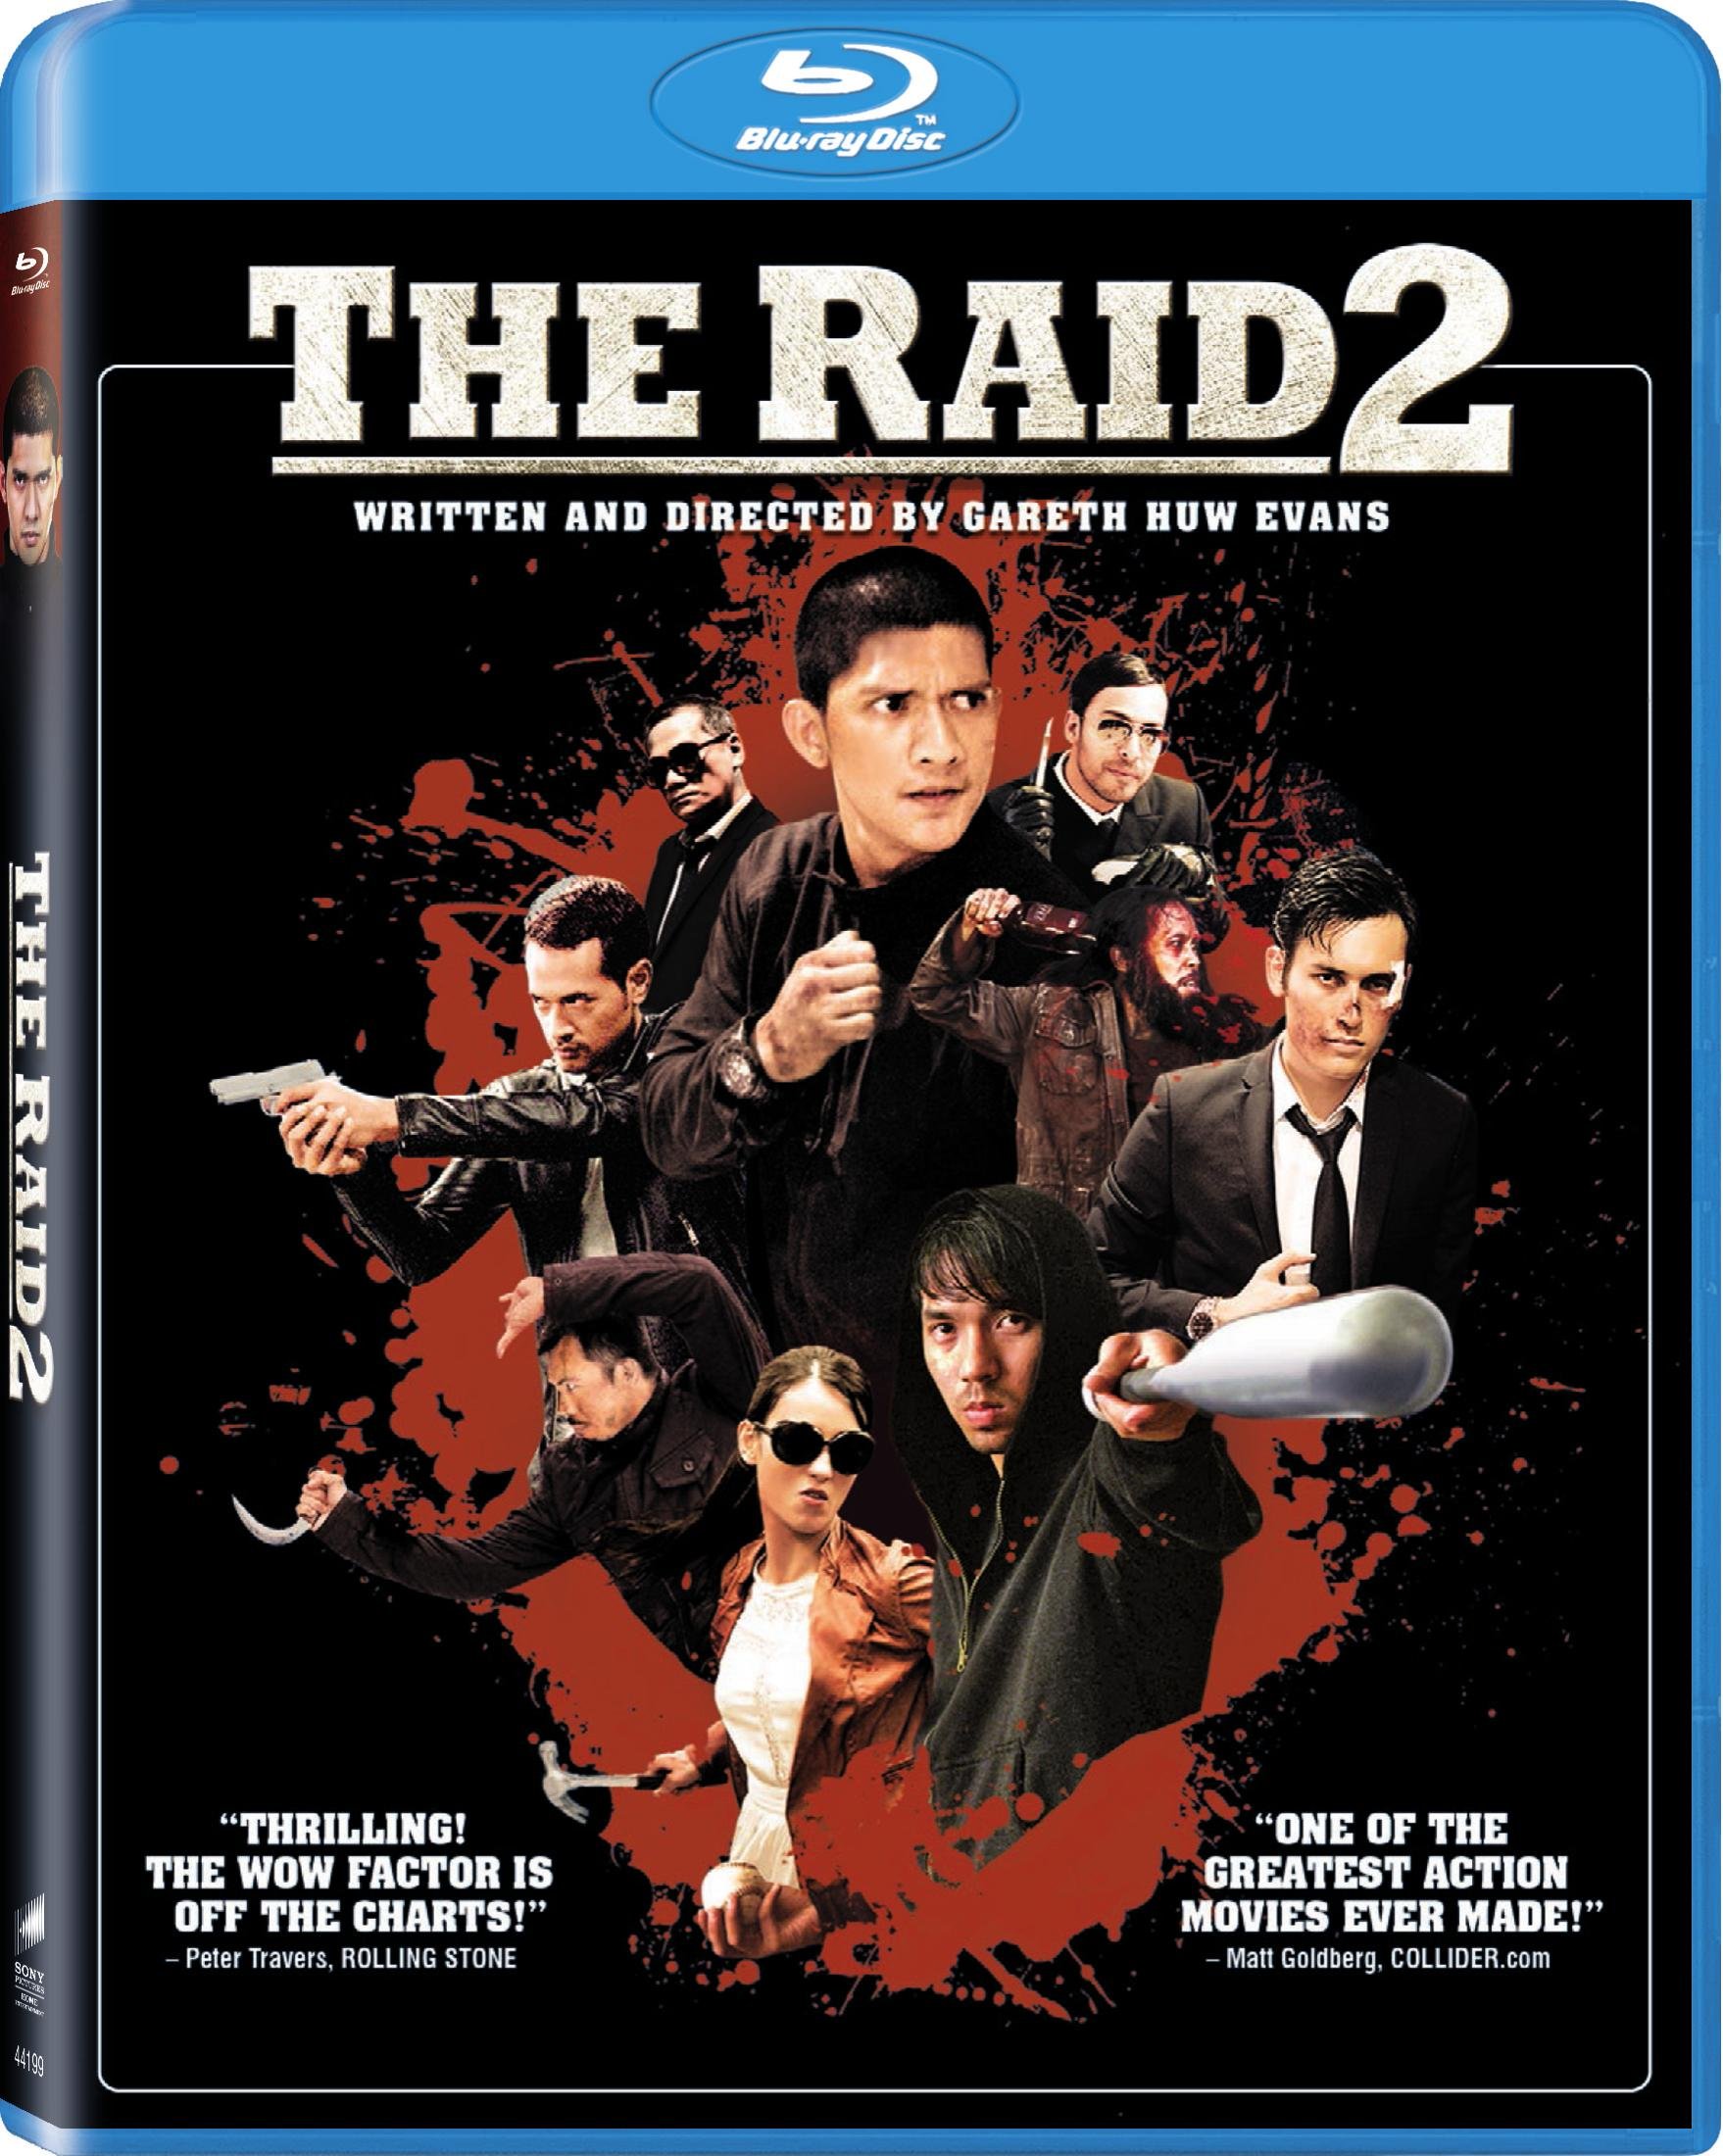 The Raid 2 Blu-ray Review